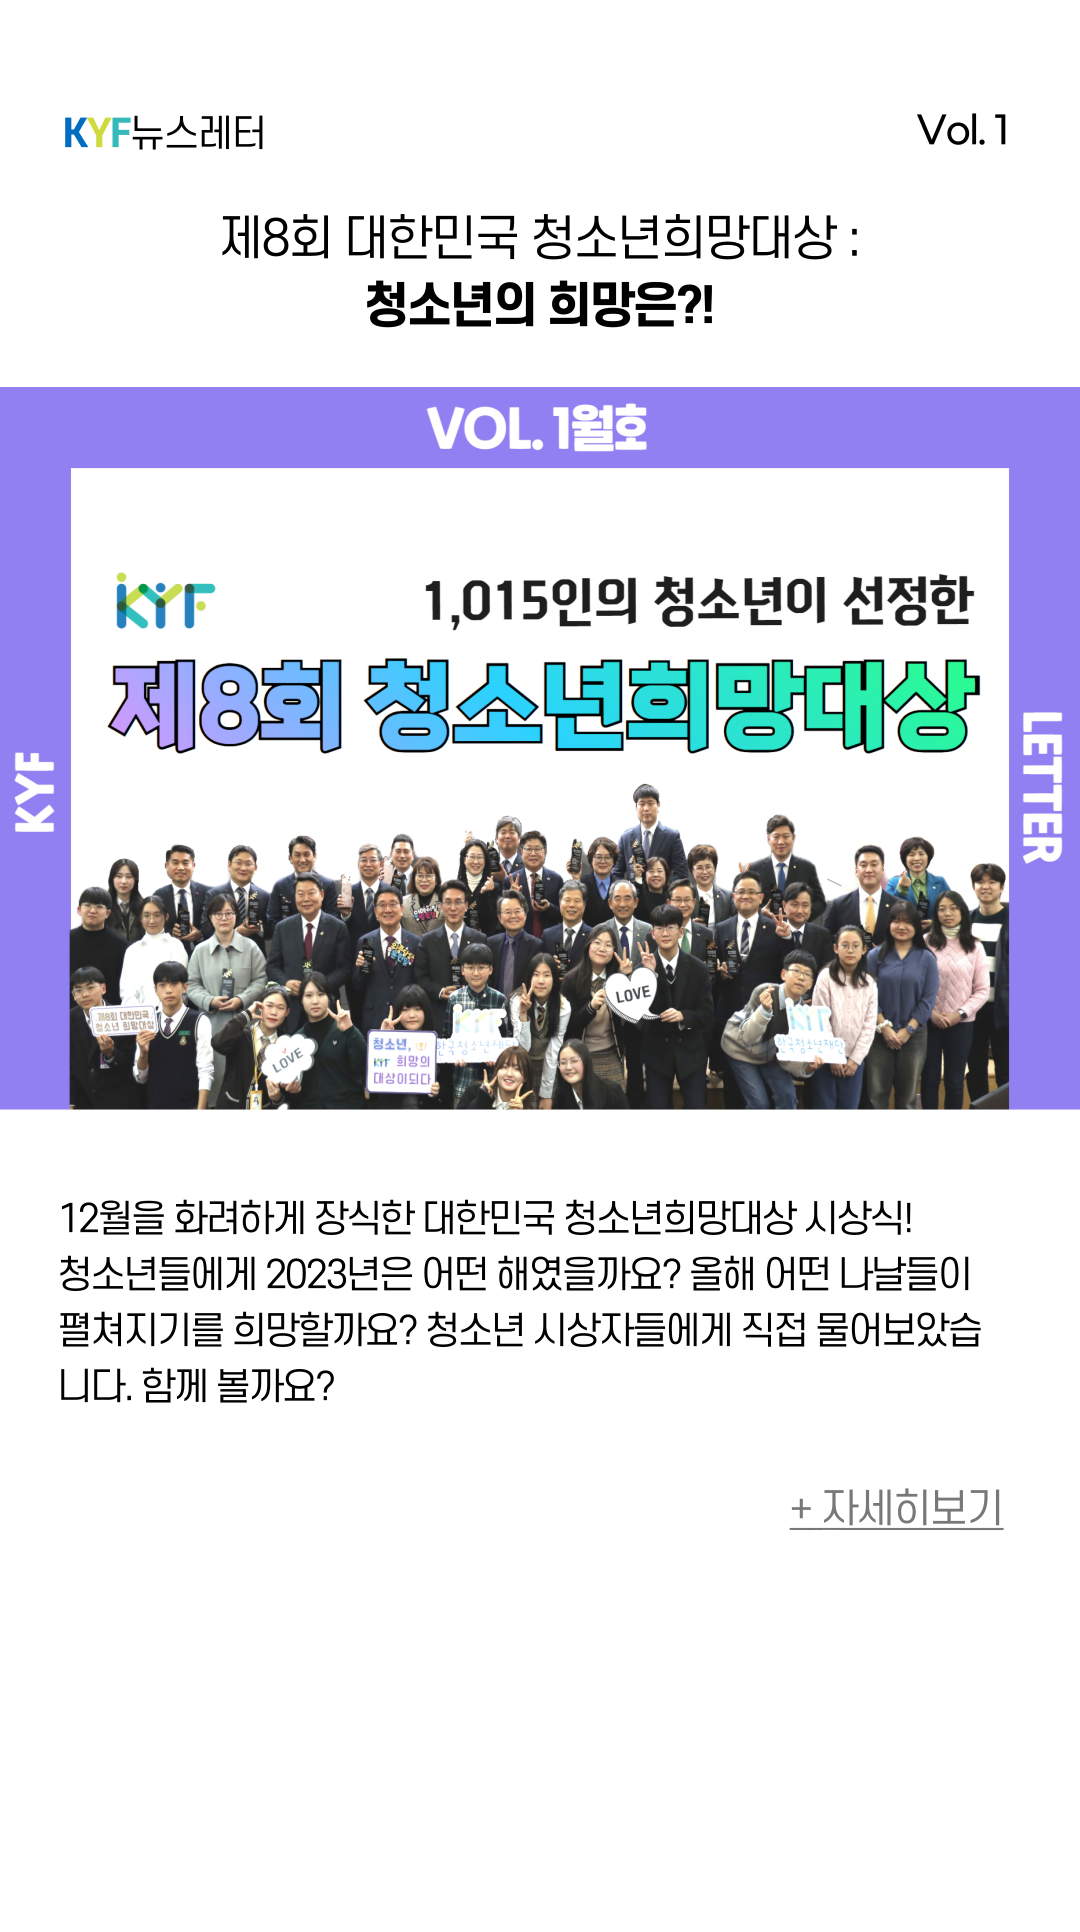 제8회 대한민국 청소년희망대상:청소년 시상자가 원하는 희망은?! | 자세히보기 | 한국청소년재단